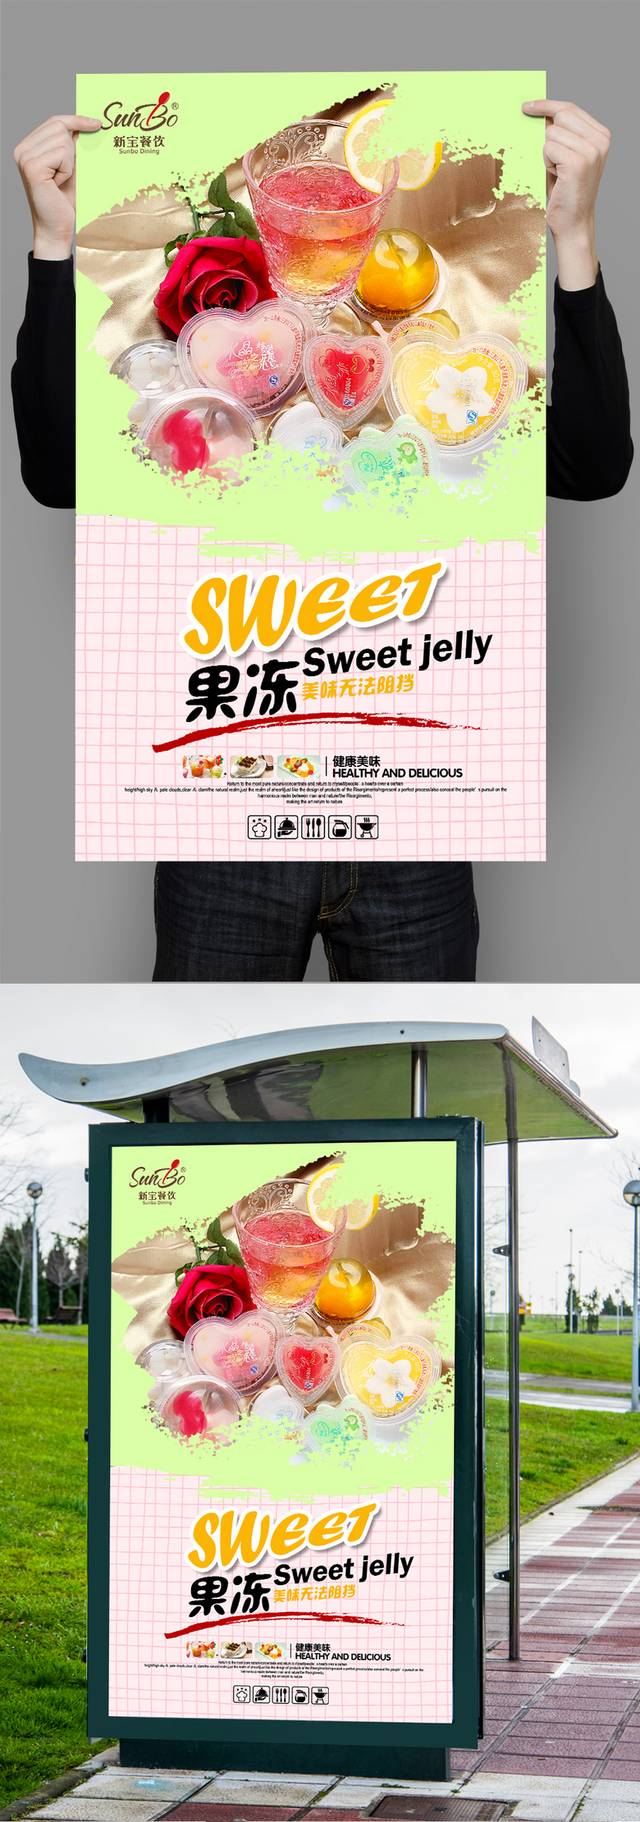 清新高档果冻零食宣传海报设计psd